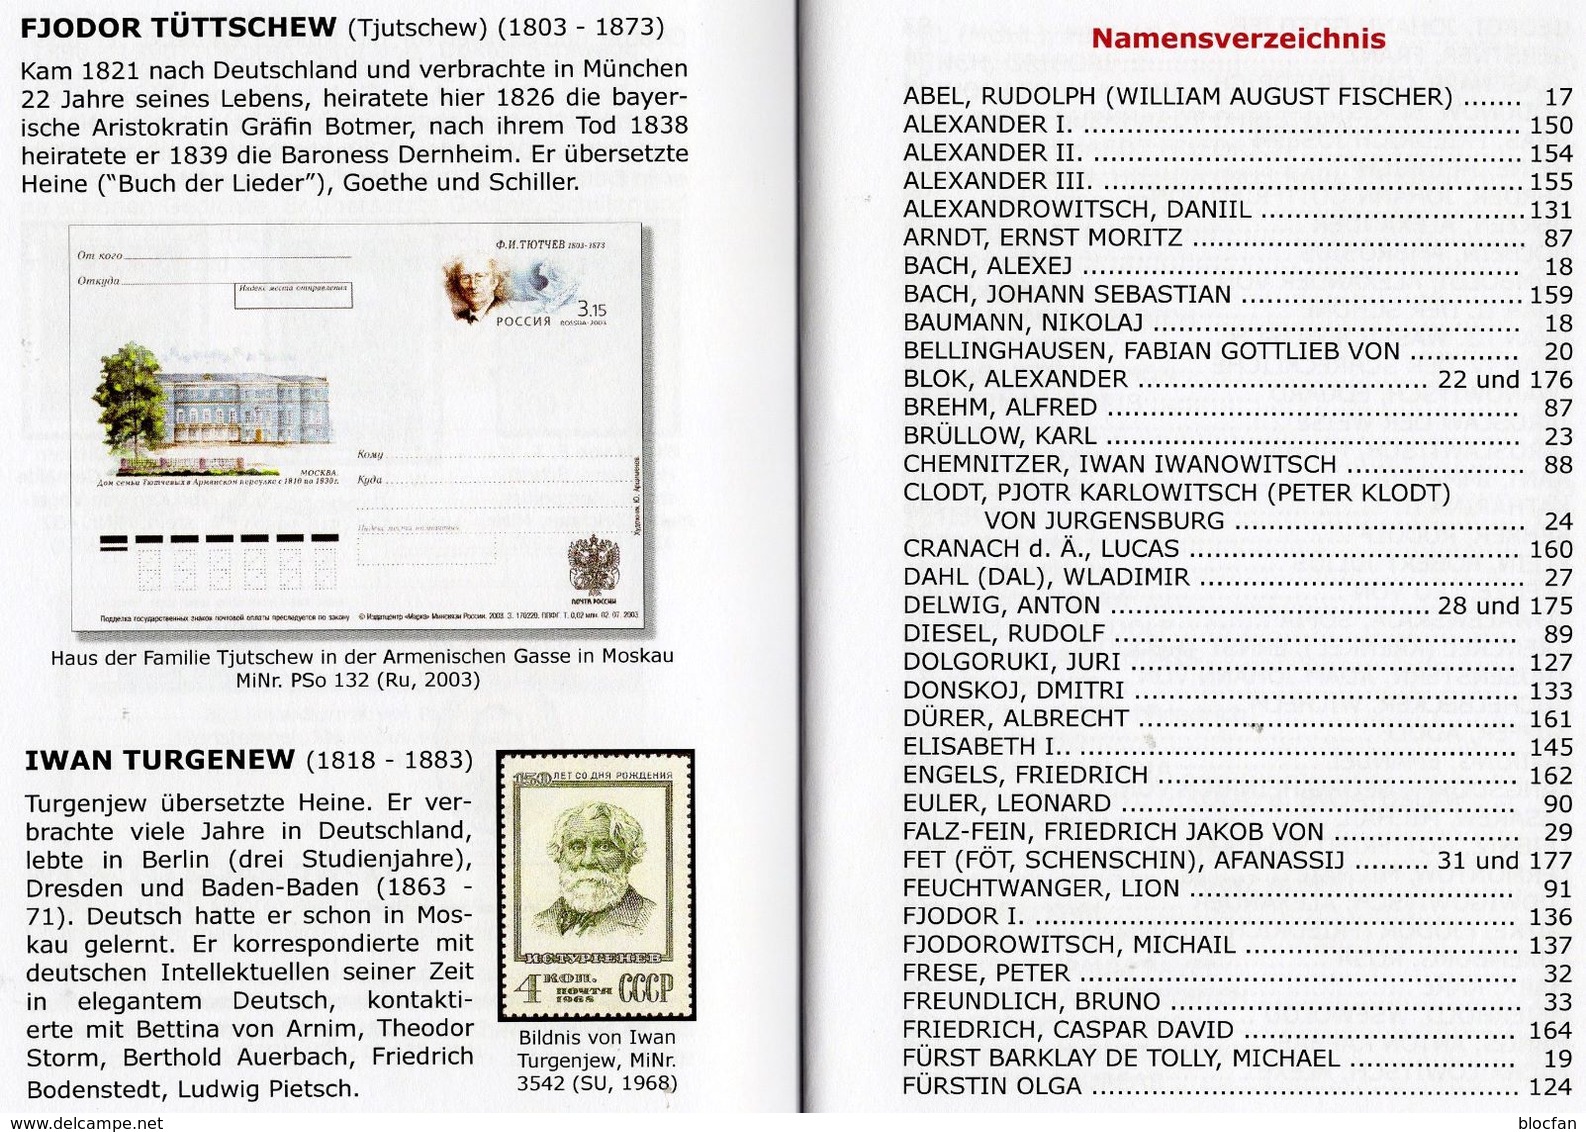 Geschichte Rußland In Der Philatelie 2013 Neu 16€ Stamp D BRD DDR Sowjetunion Russia Von V.Konschuh Book Of History - Motive